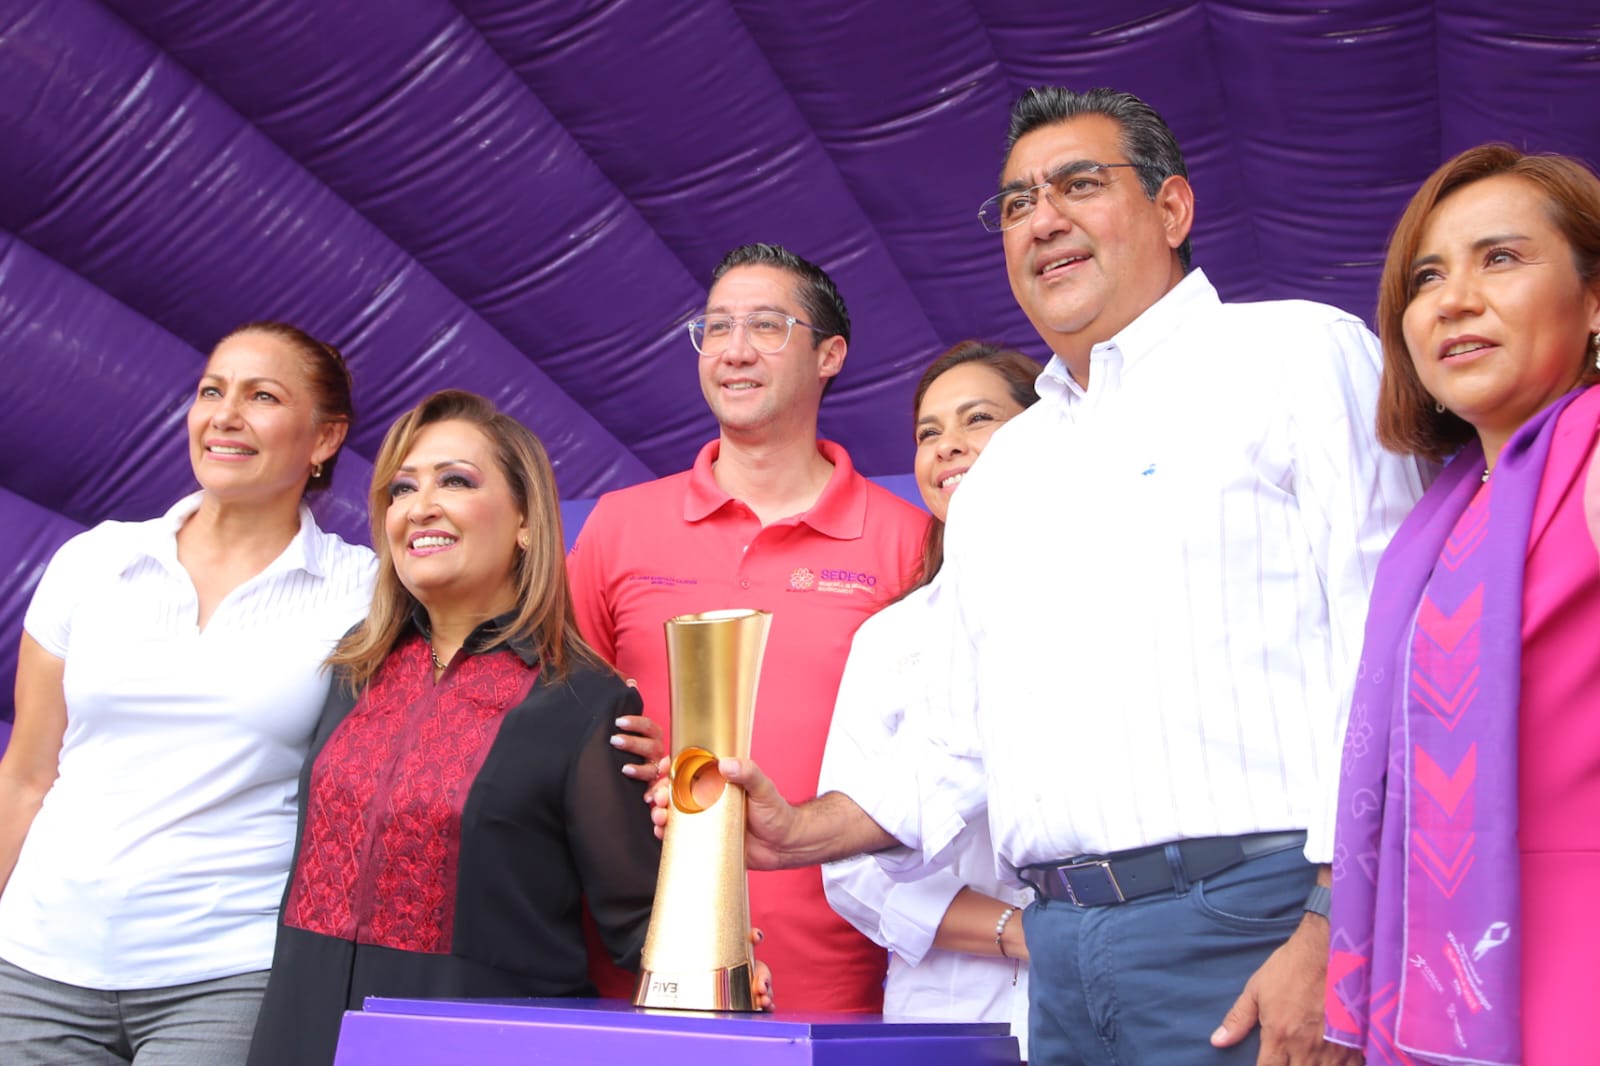 Coadyuvan Puebla y Tlaxcala para promover el deporte, presiden gobernadores “Trophy Tour” Campeonato de Voleibol